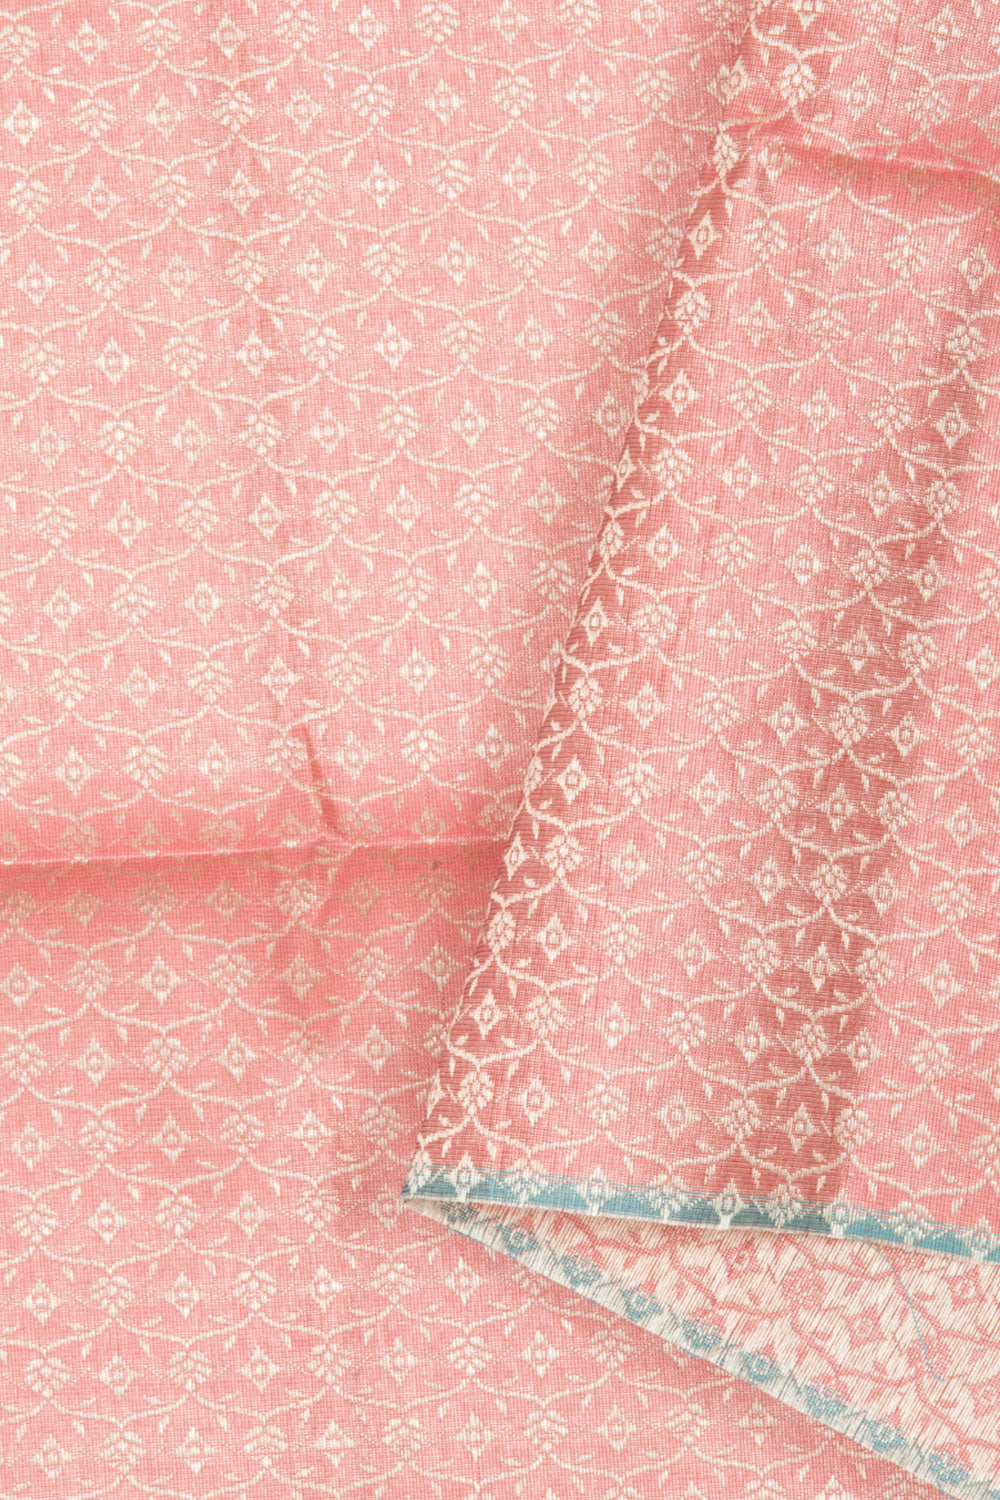 Cherry Blossom Pink Banarasi Katrua Silk Salwar Suit Material 10061159